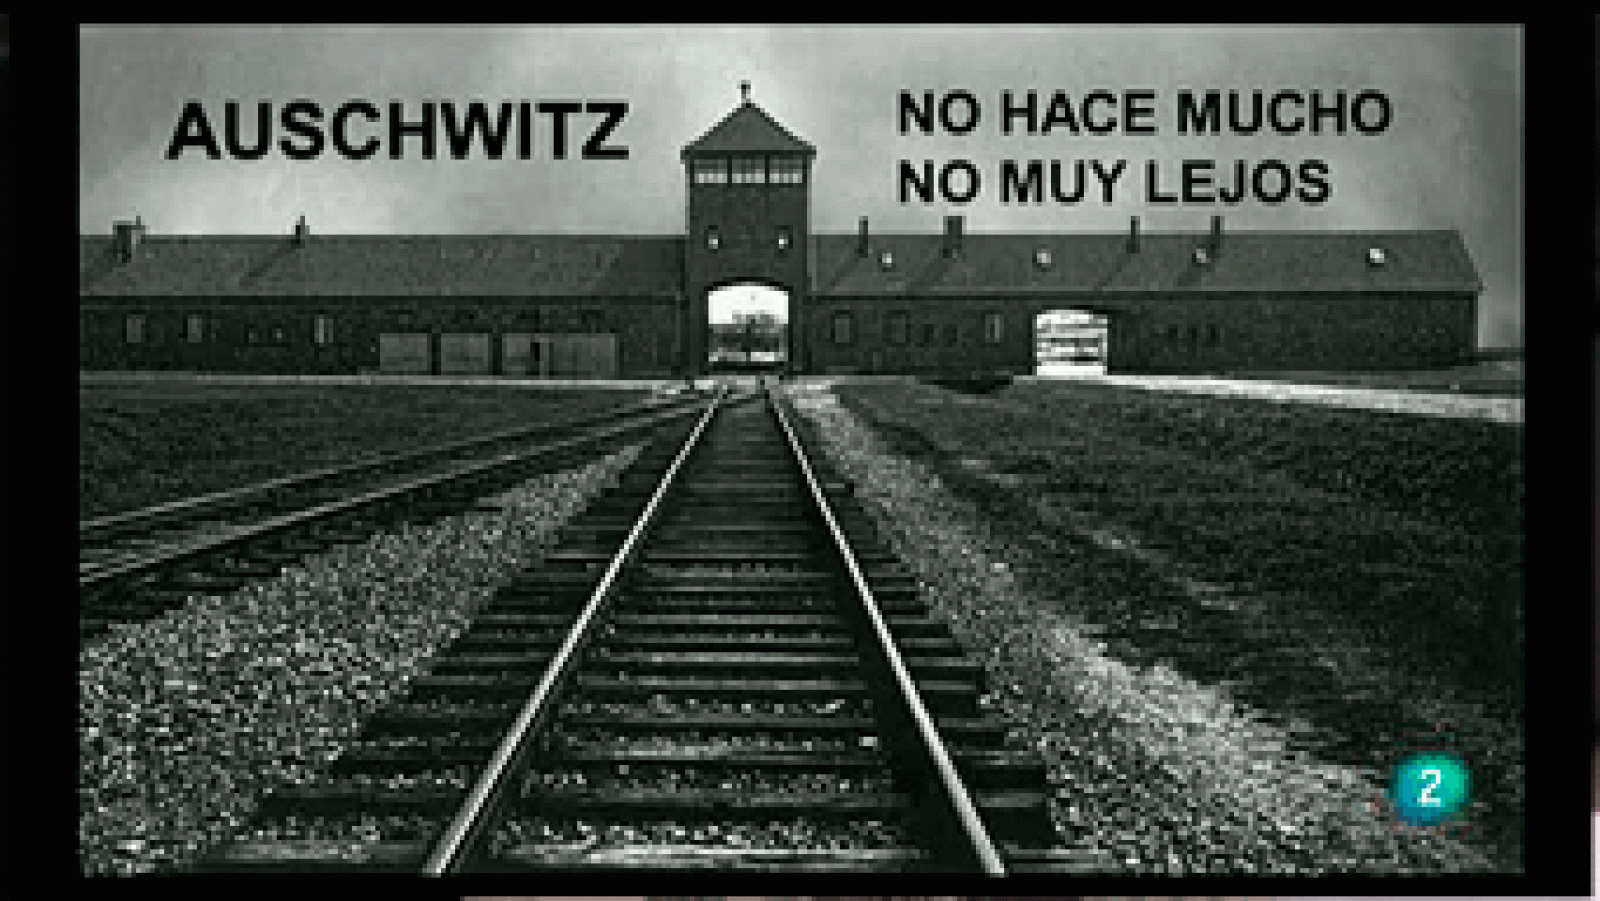 La Aventura del Saber - Auschwitz. No hace mucho. No muy lejos